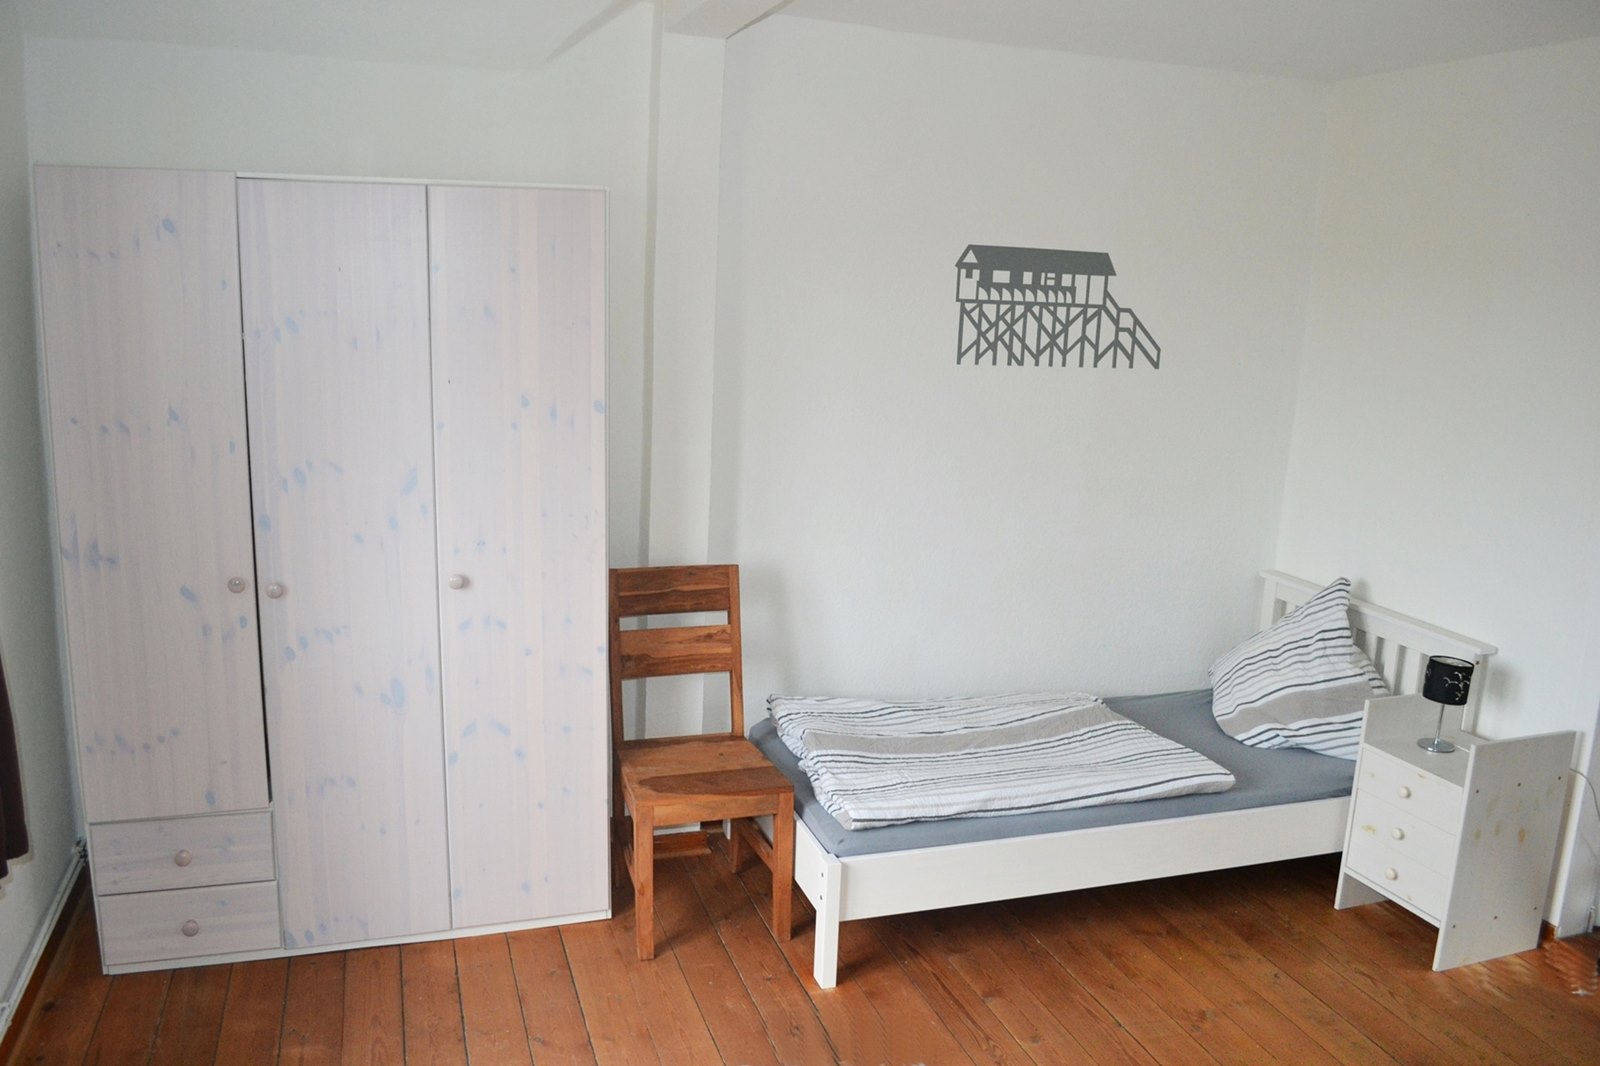 Ein Schlafraum mit 3 Einzelbetten (90x200)